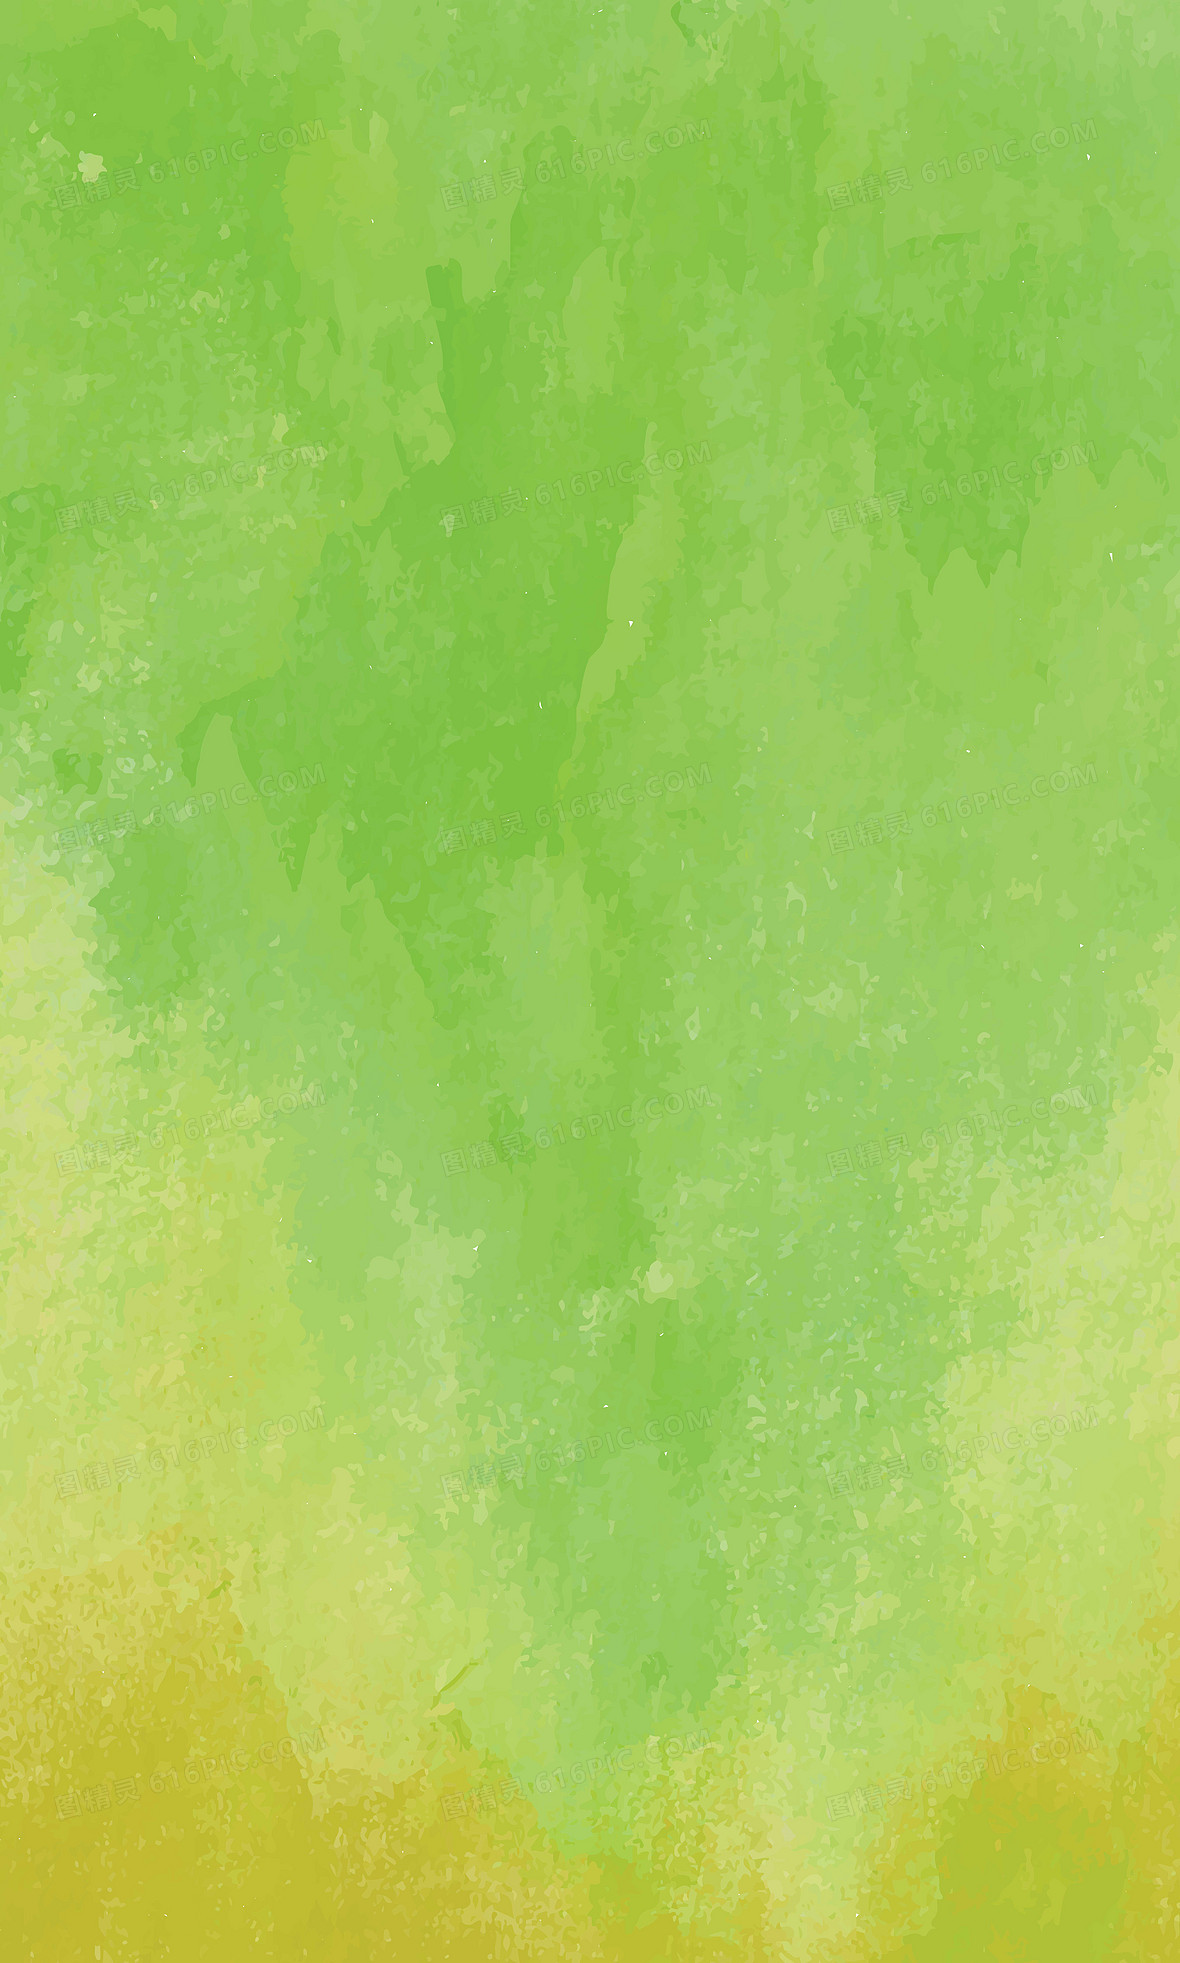 关键词:水彩 彩色 绿色 水彩墨 矢量图精灵为您提供水彩背景免费下载